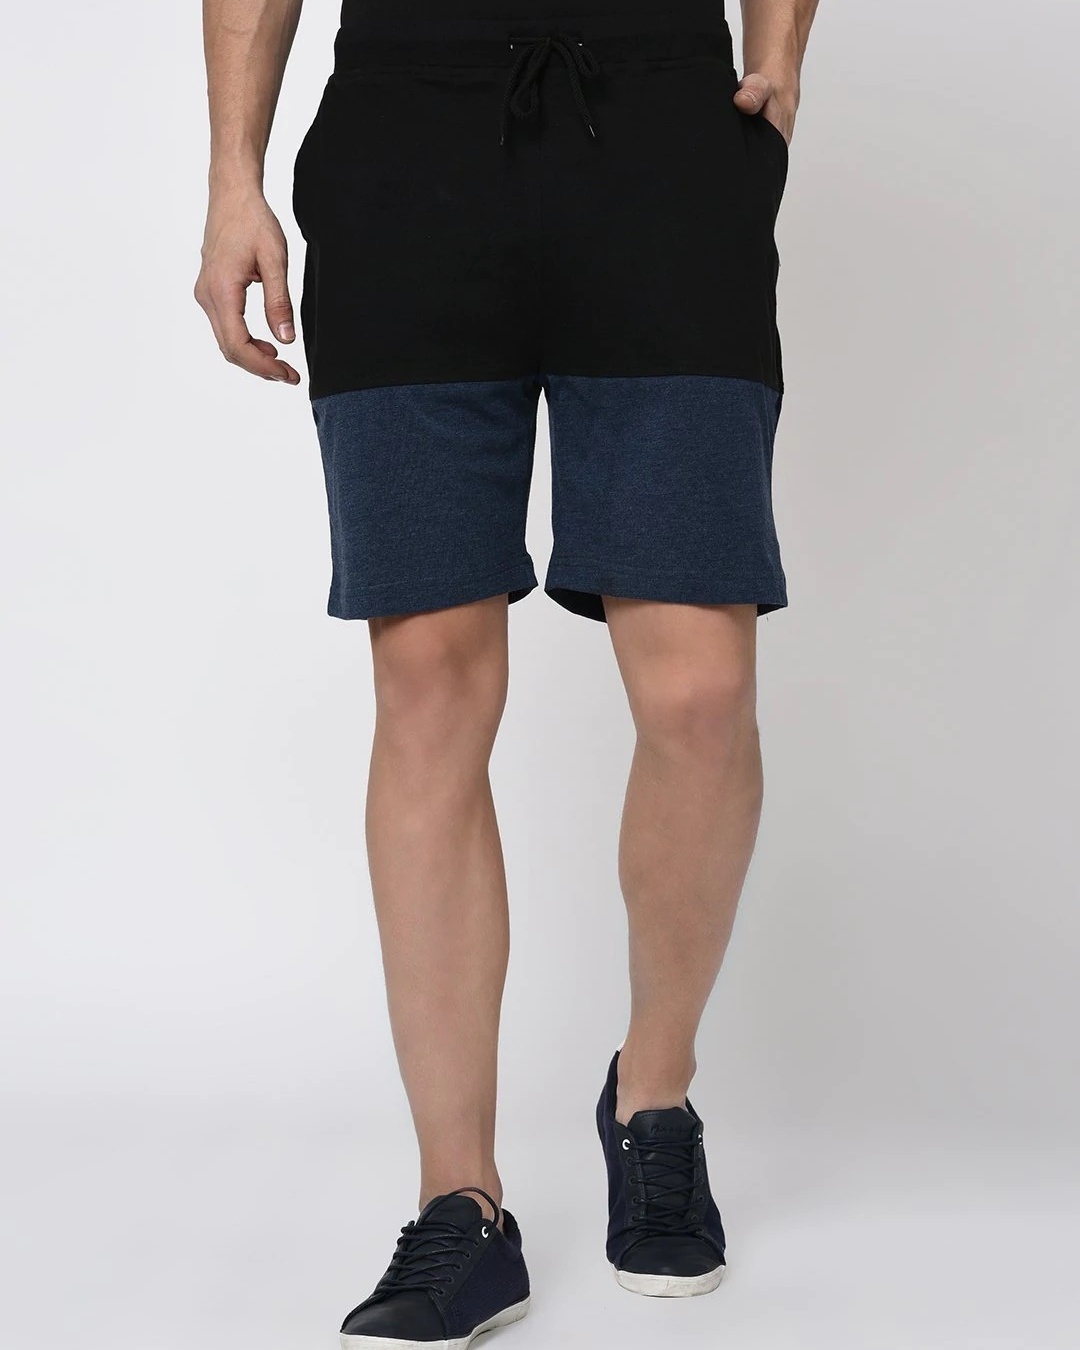 Shop Men's Black & Blue Color Block Shorts-Front